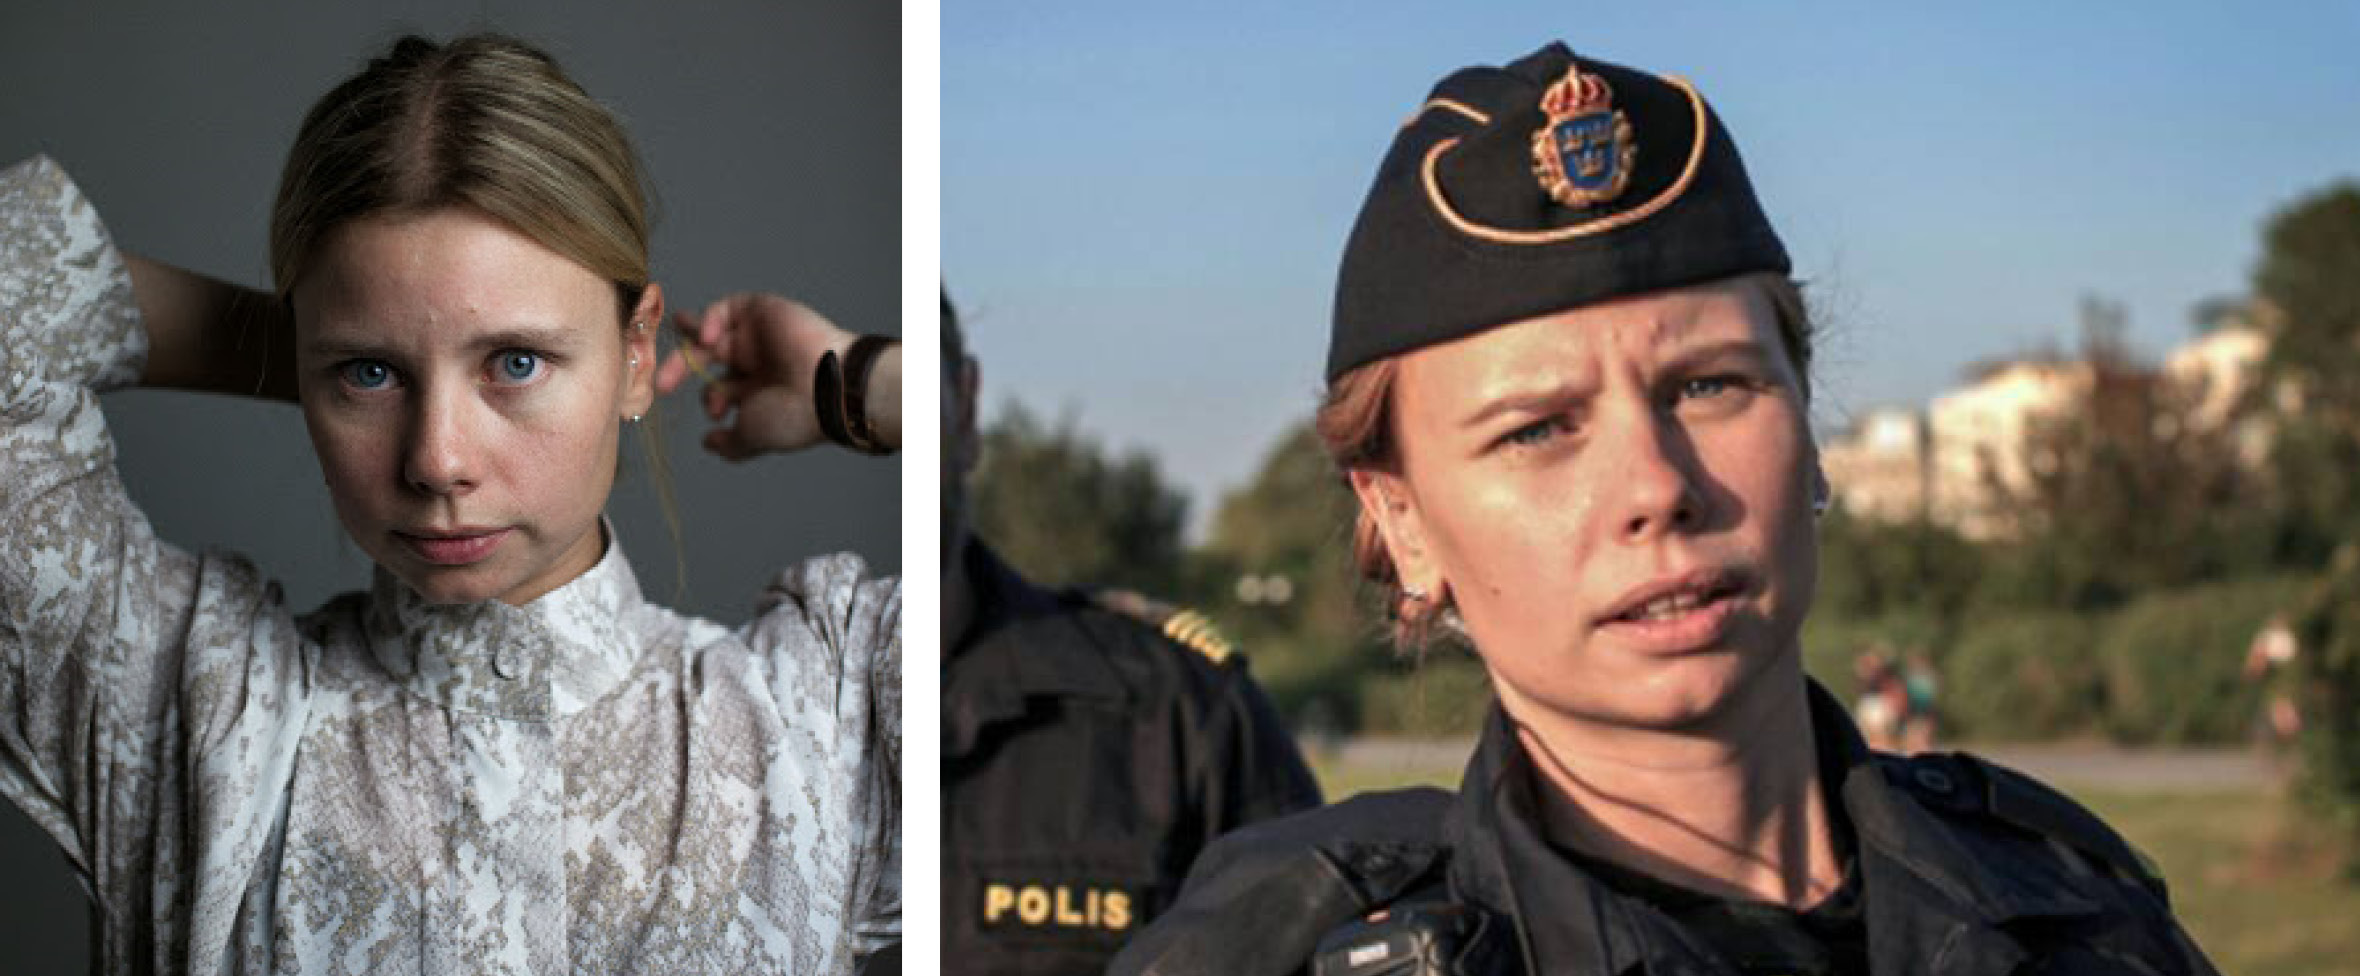 Kollage: till vänster blond kvinna i vit skjorta. Till höger samma blonda kvinna men i polisuniform.